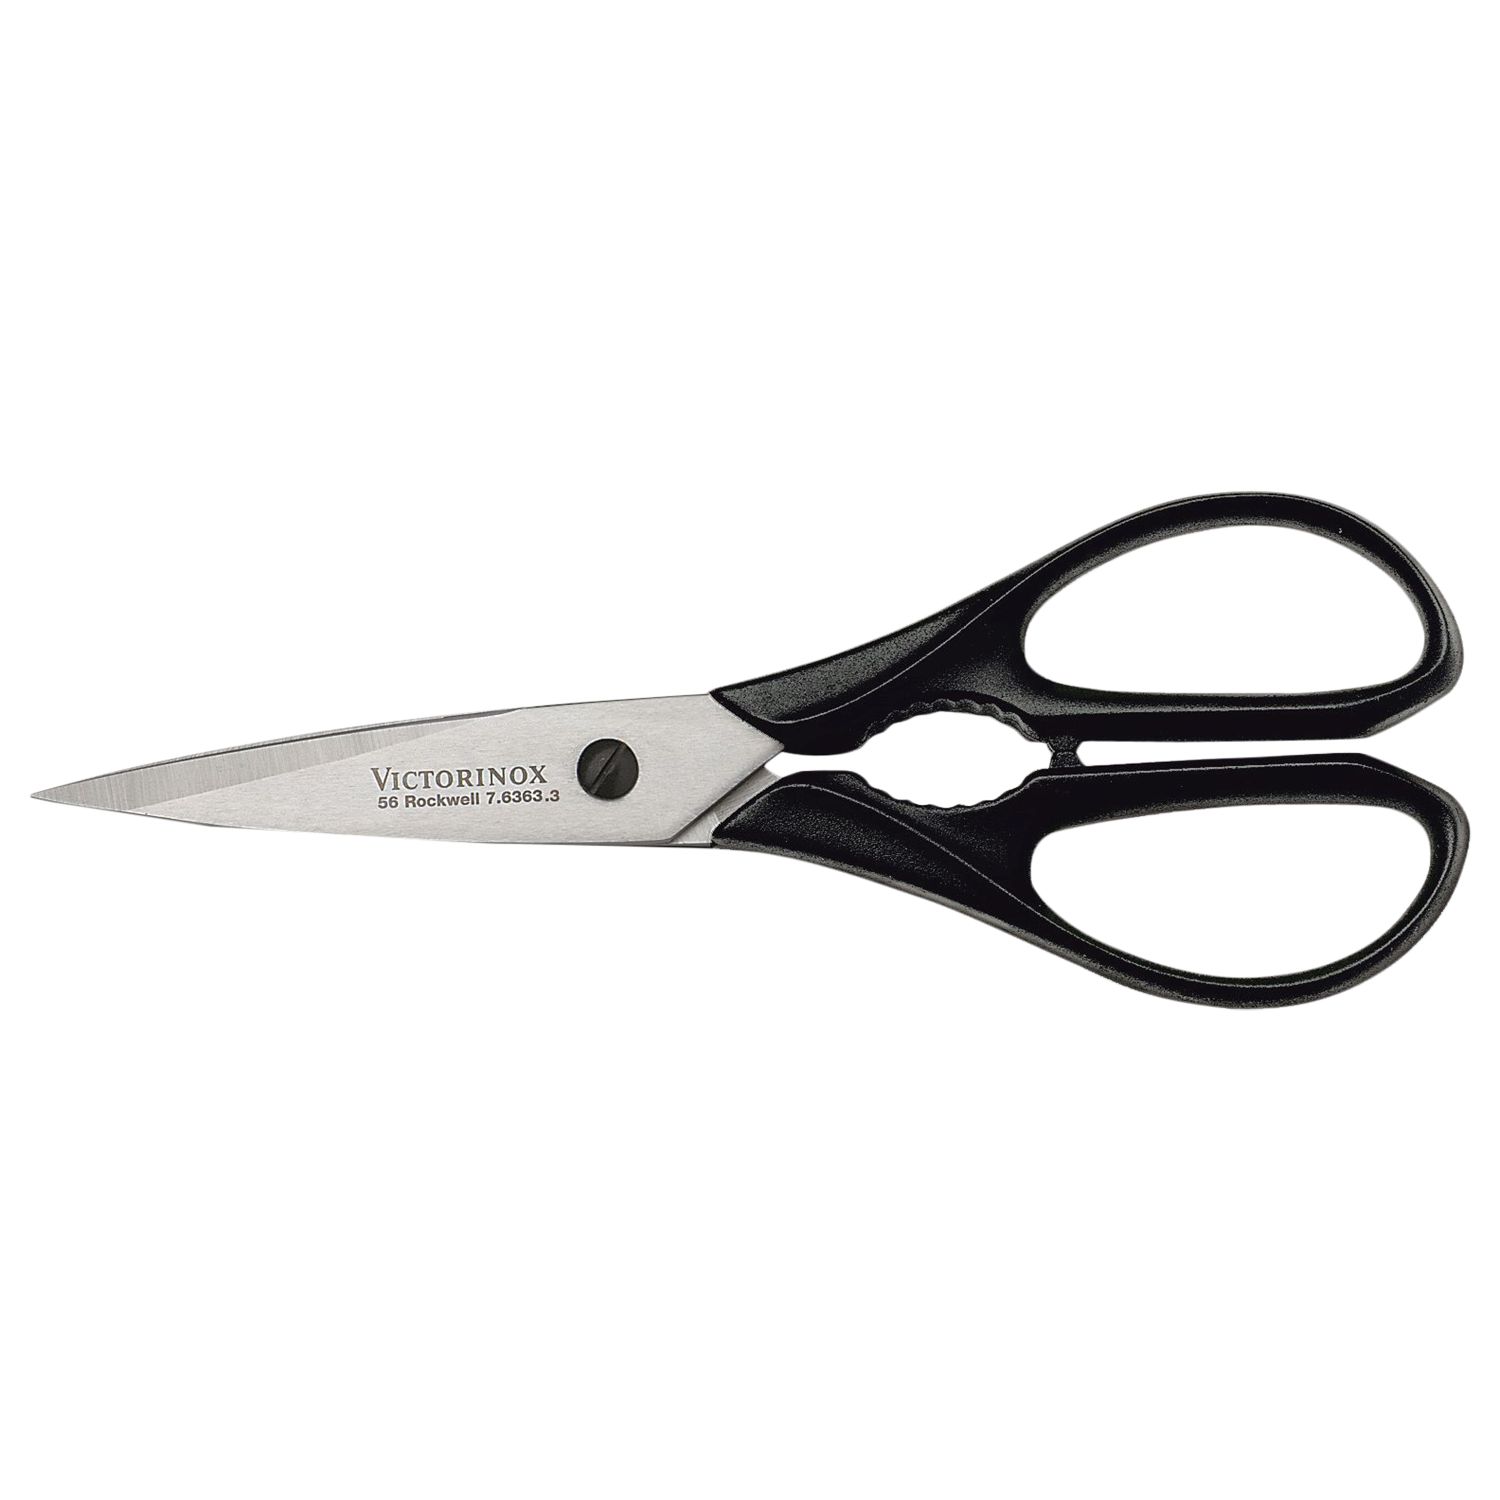 Victorinox Stainless Steel Kitchen Scissors, Black, L20.2cm